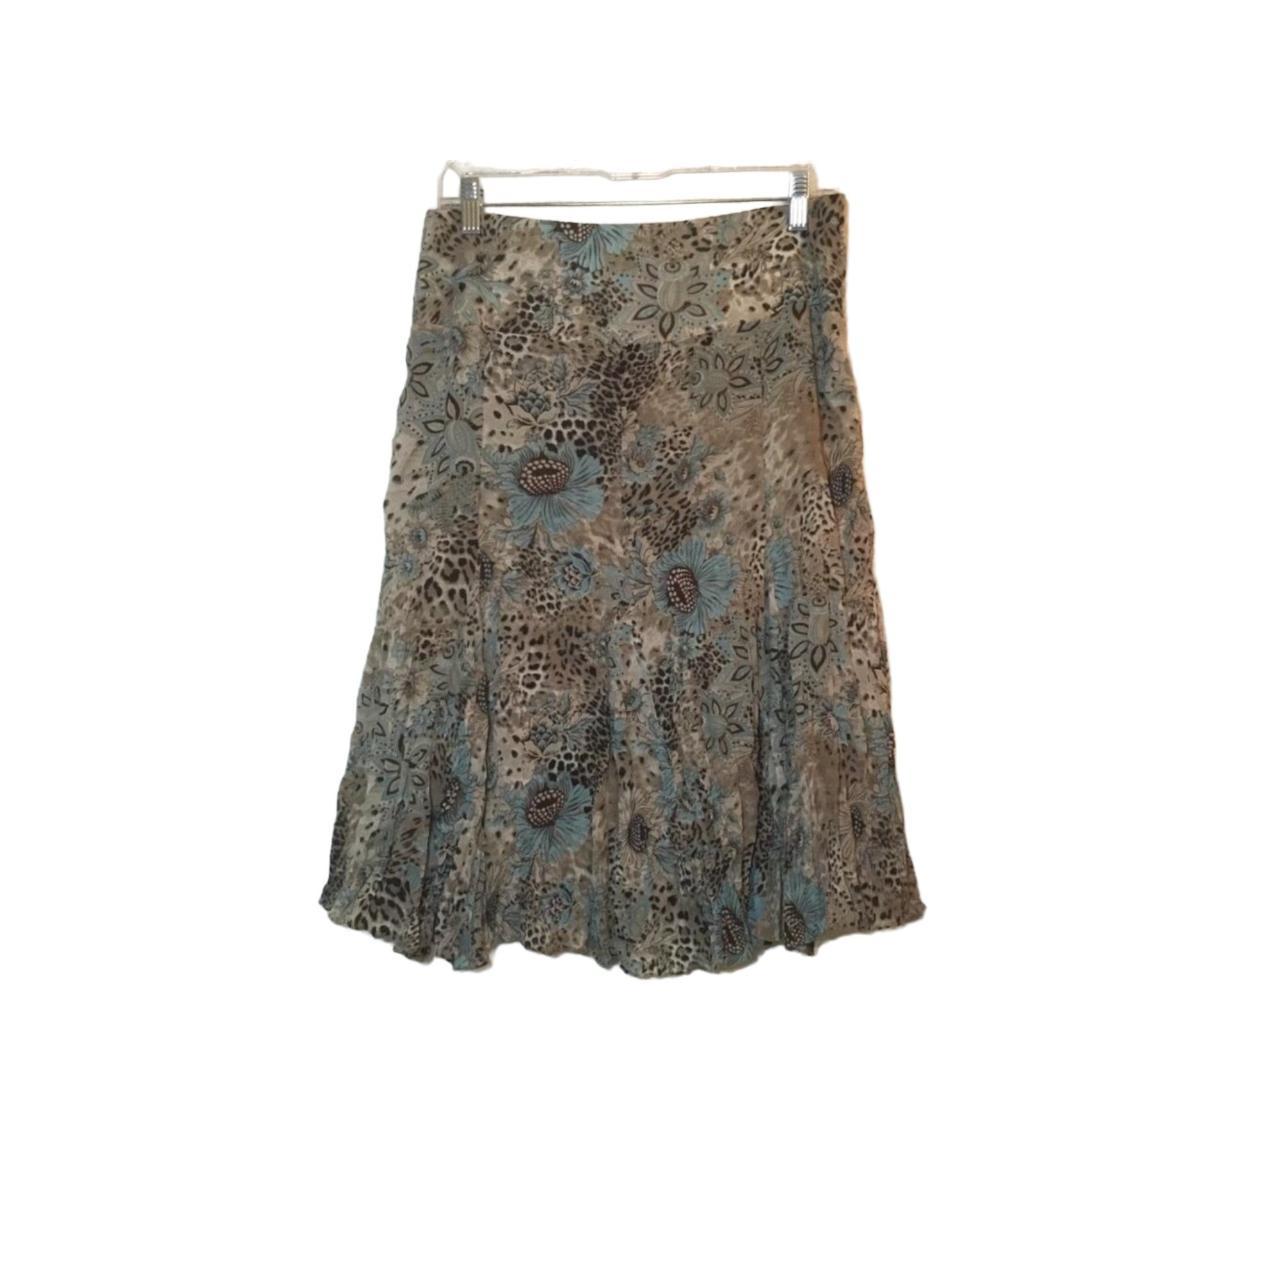 Bundle Buy Midi Skirt Fit N Flare Lined Floral Print... - Depop